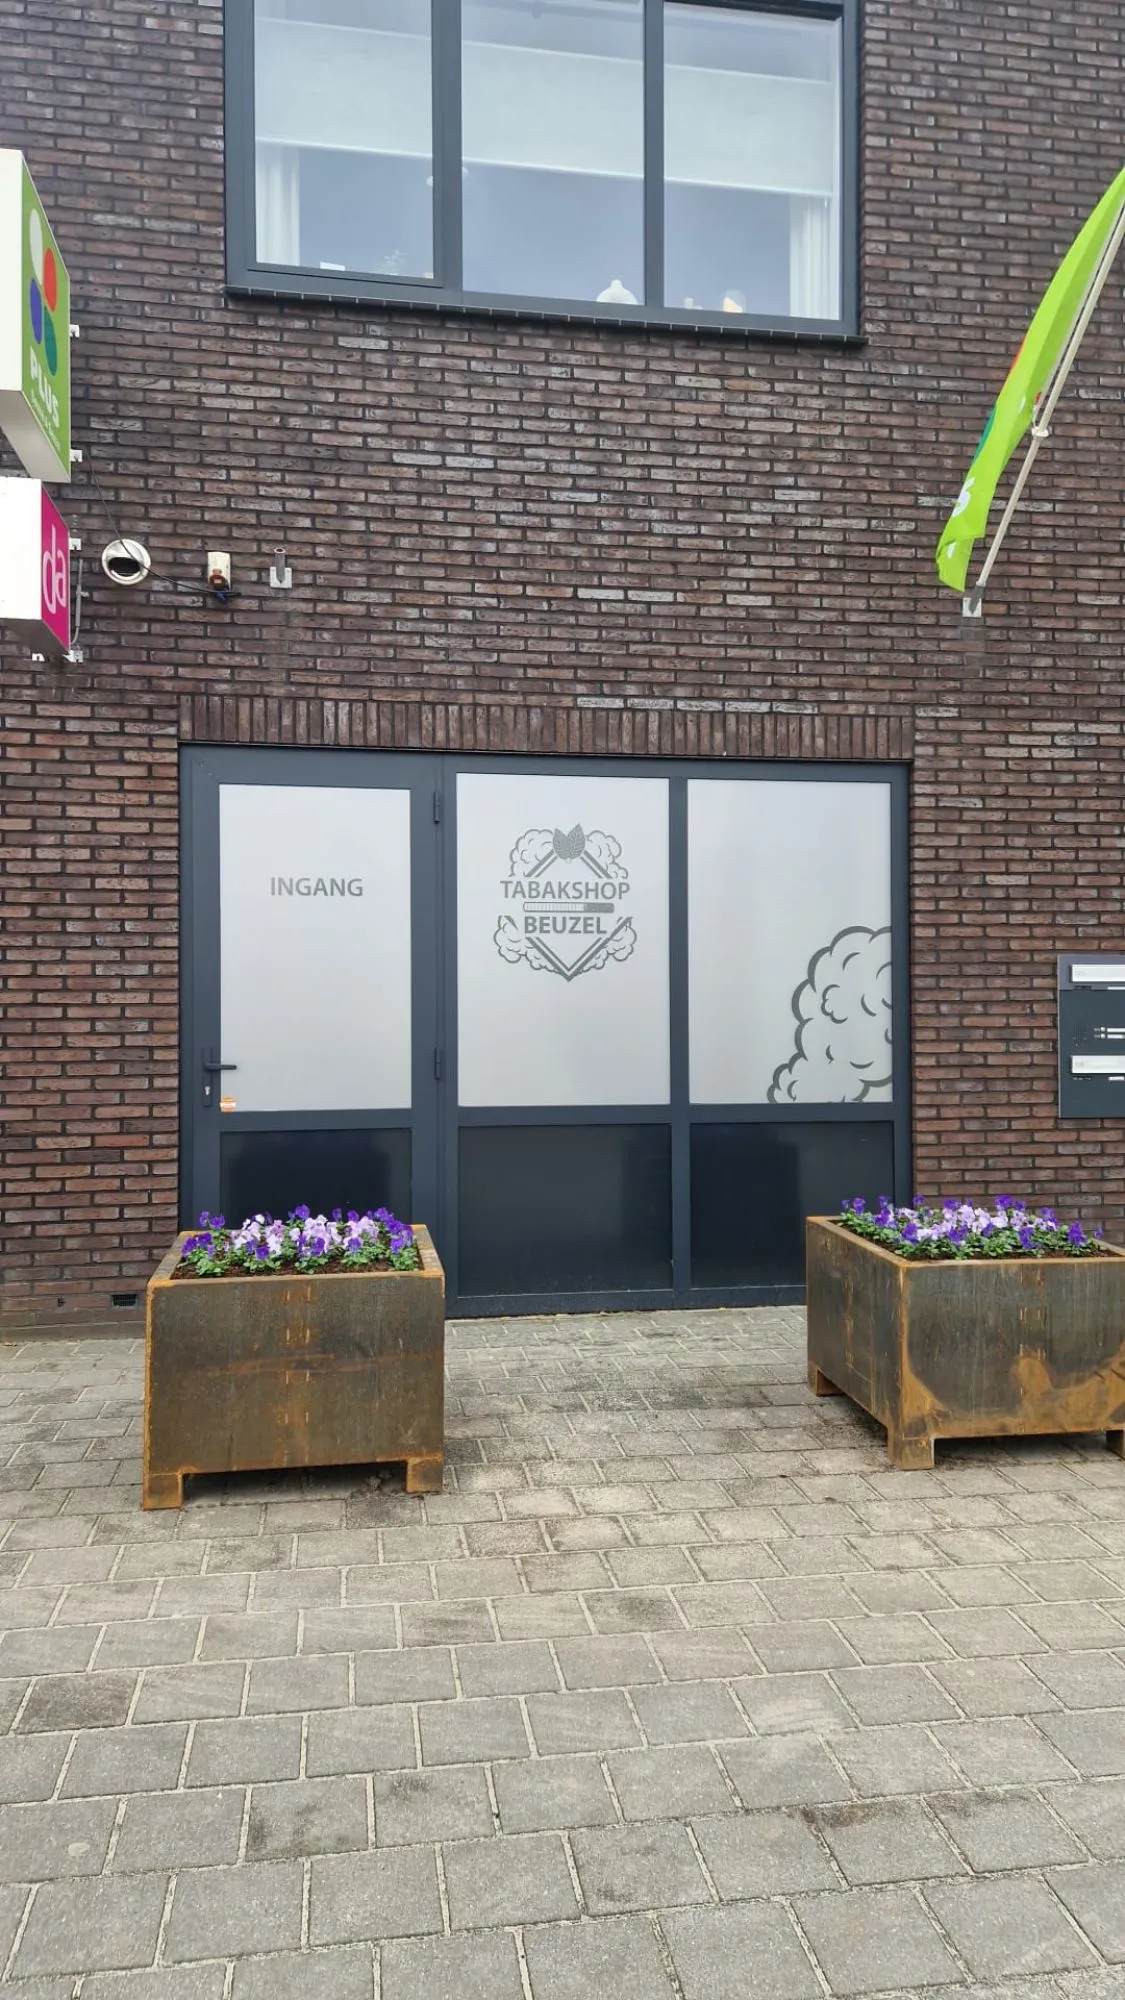 Beuzel&Beuzel openen eigen tabakshop in Laren